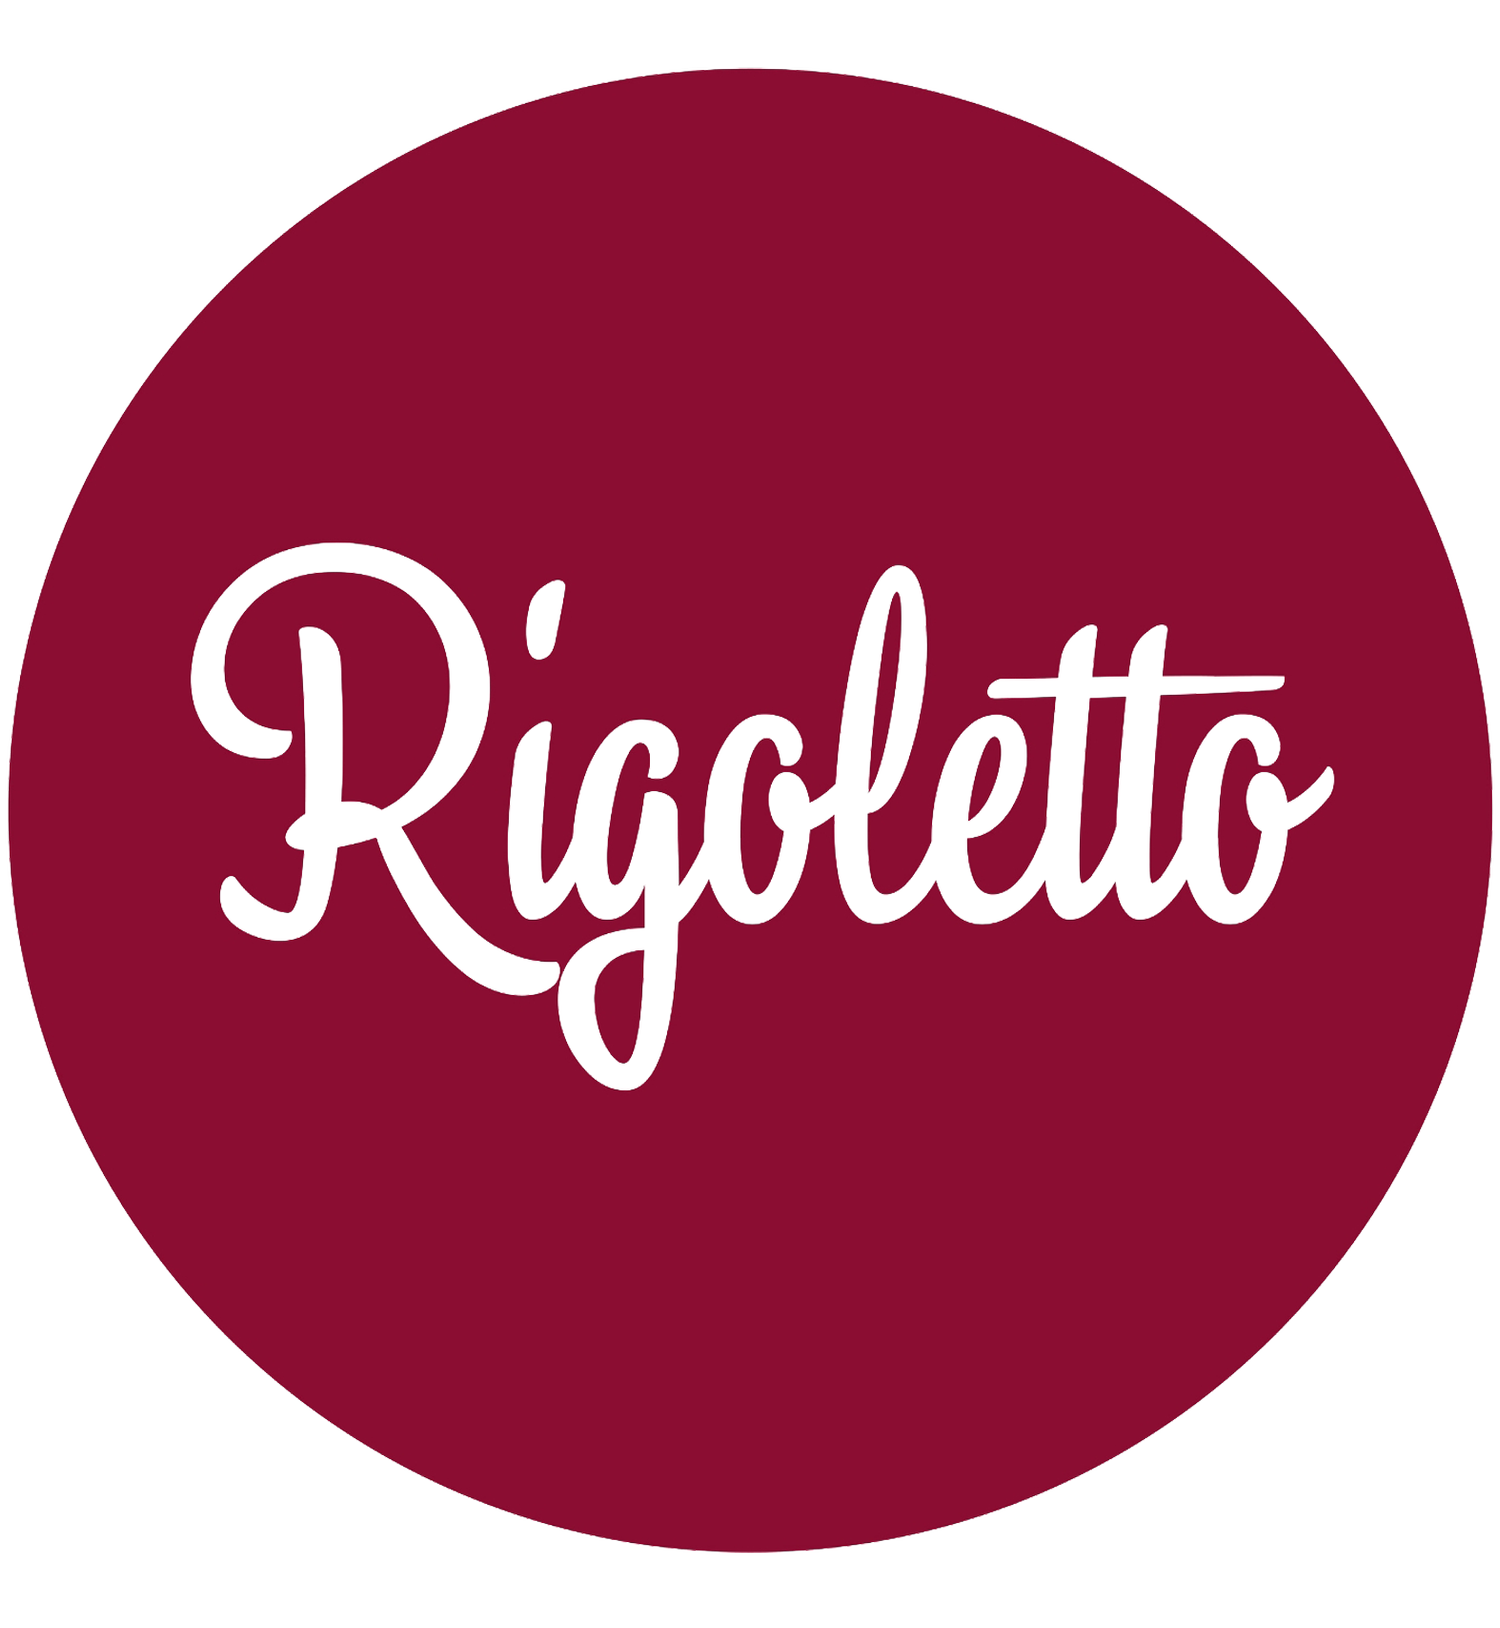 Rigoletto Italian Bakery and Cafe